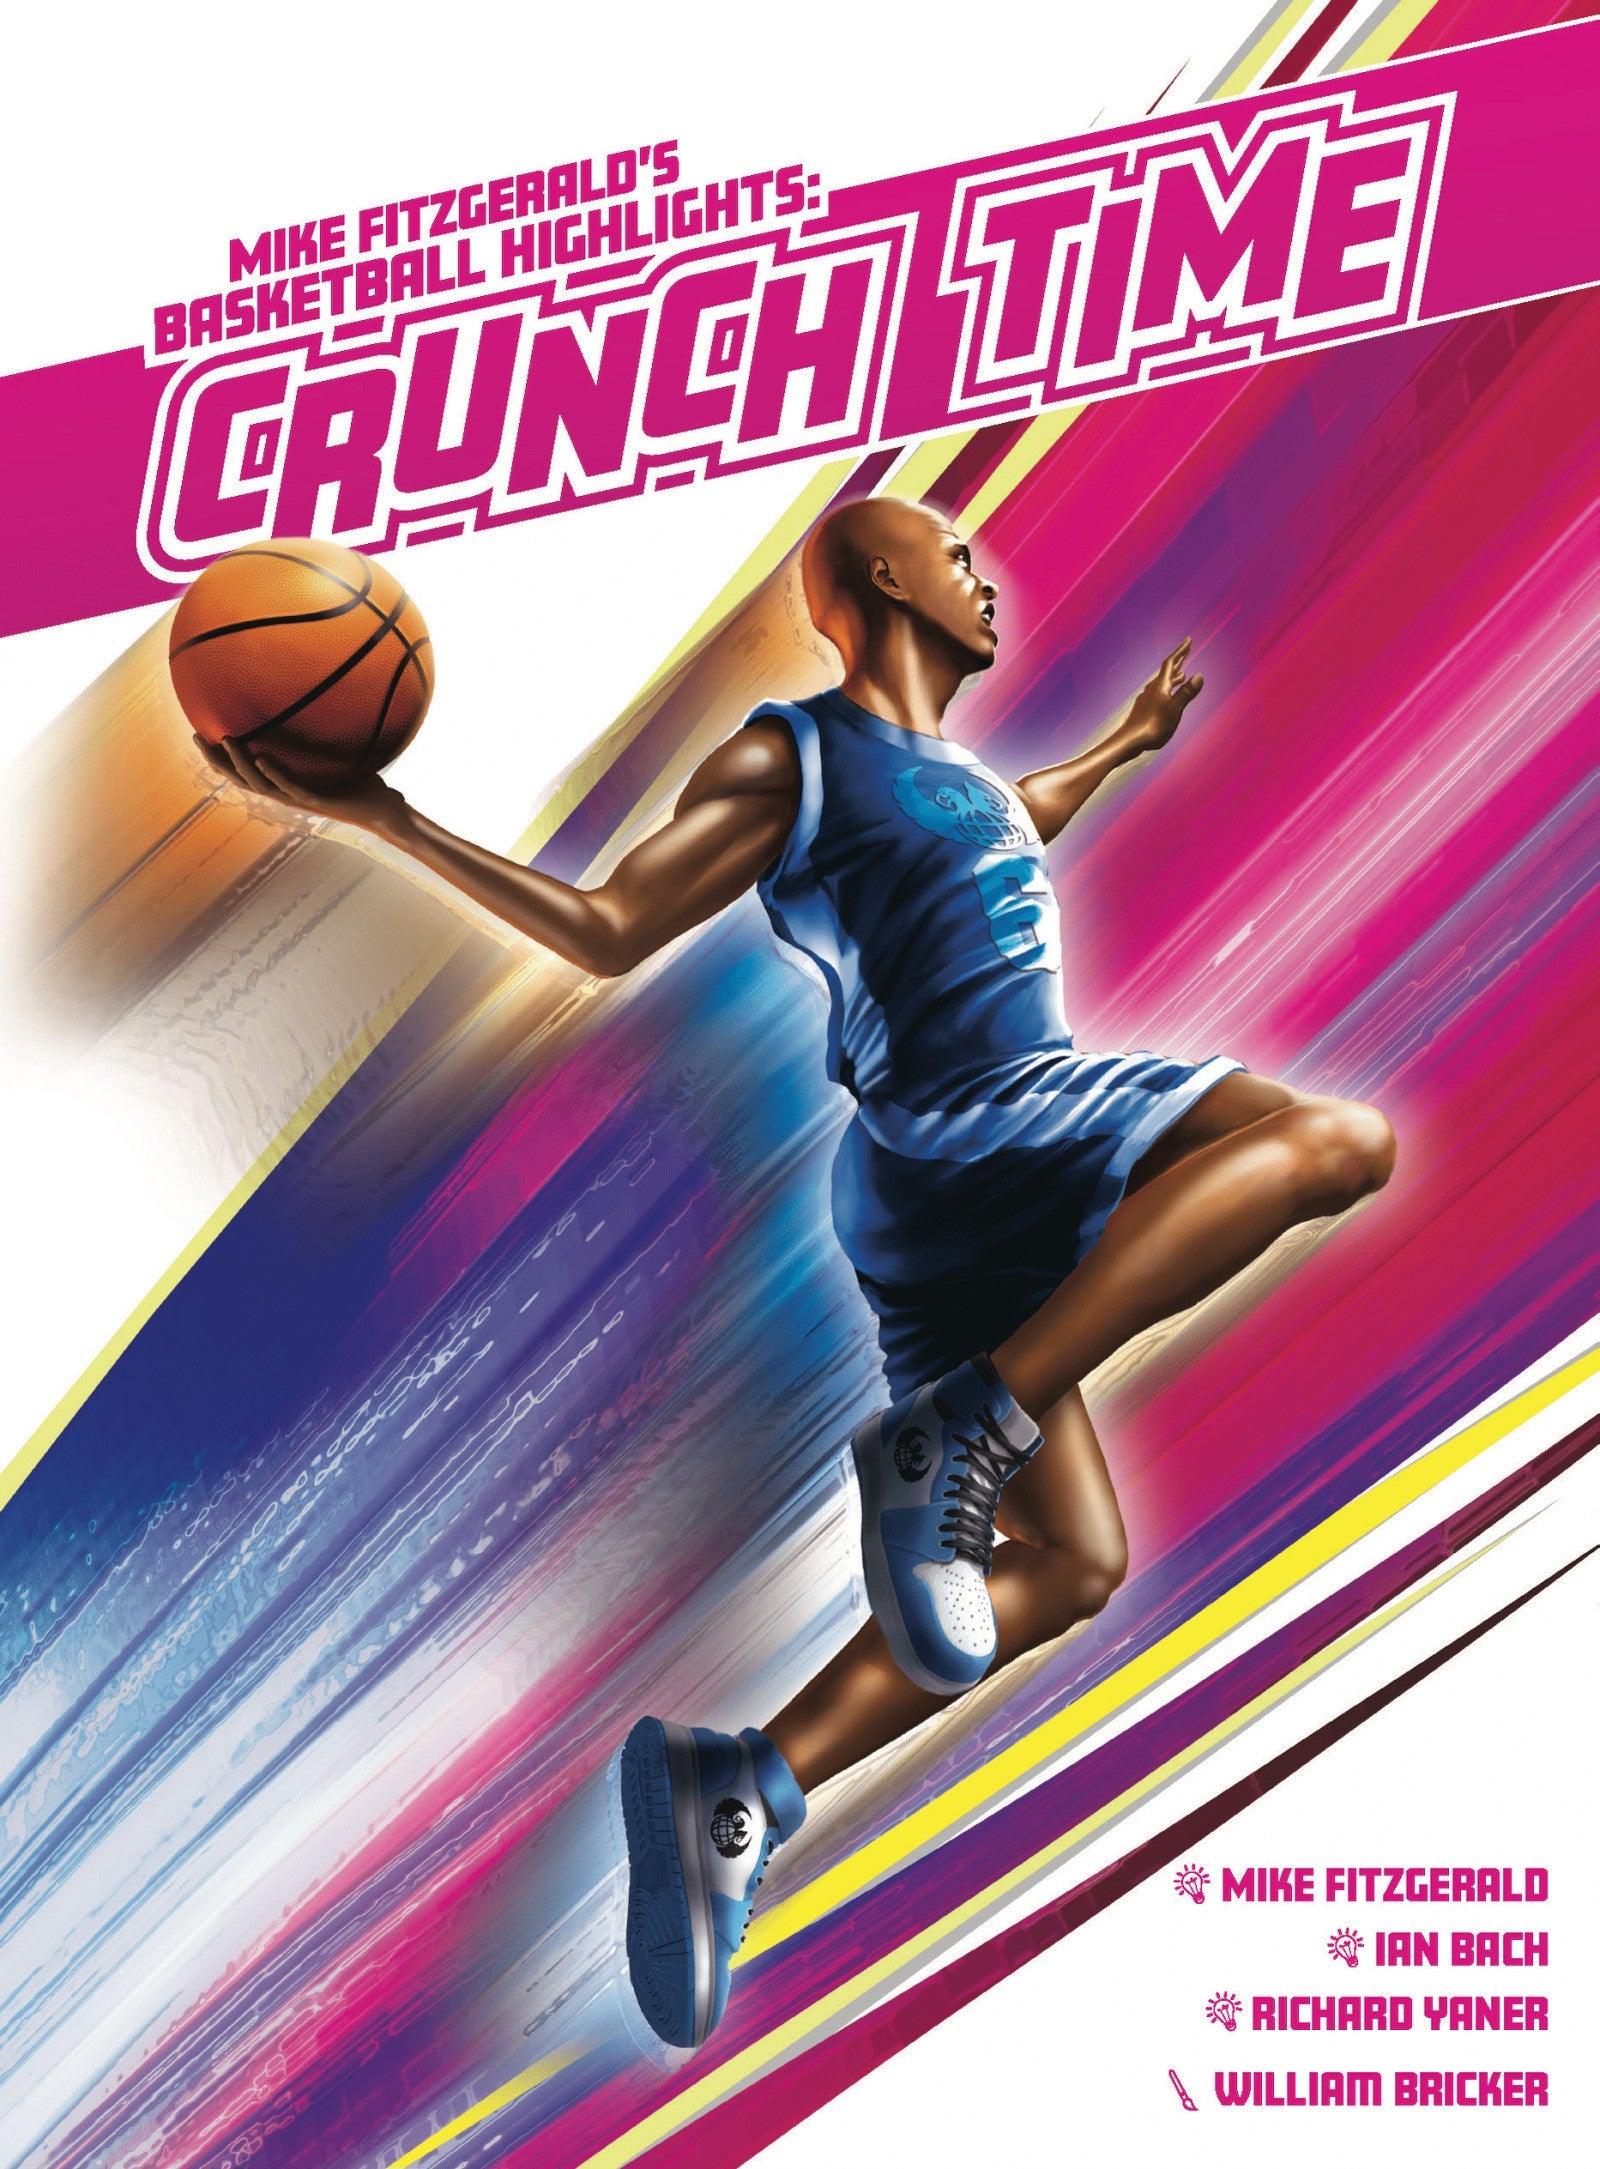 Basketball Highlights Crunch Time (Kickstarter Release)